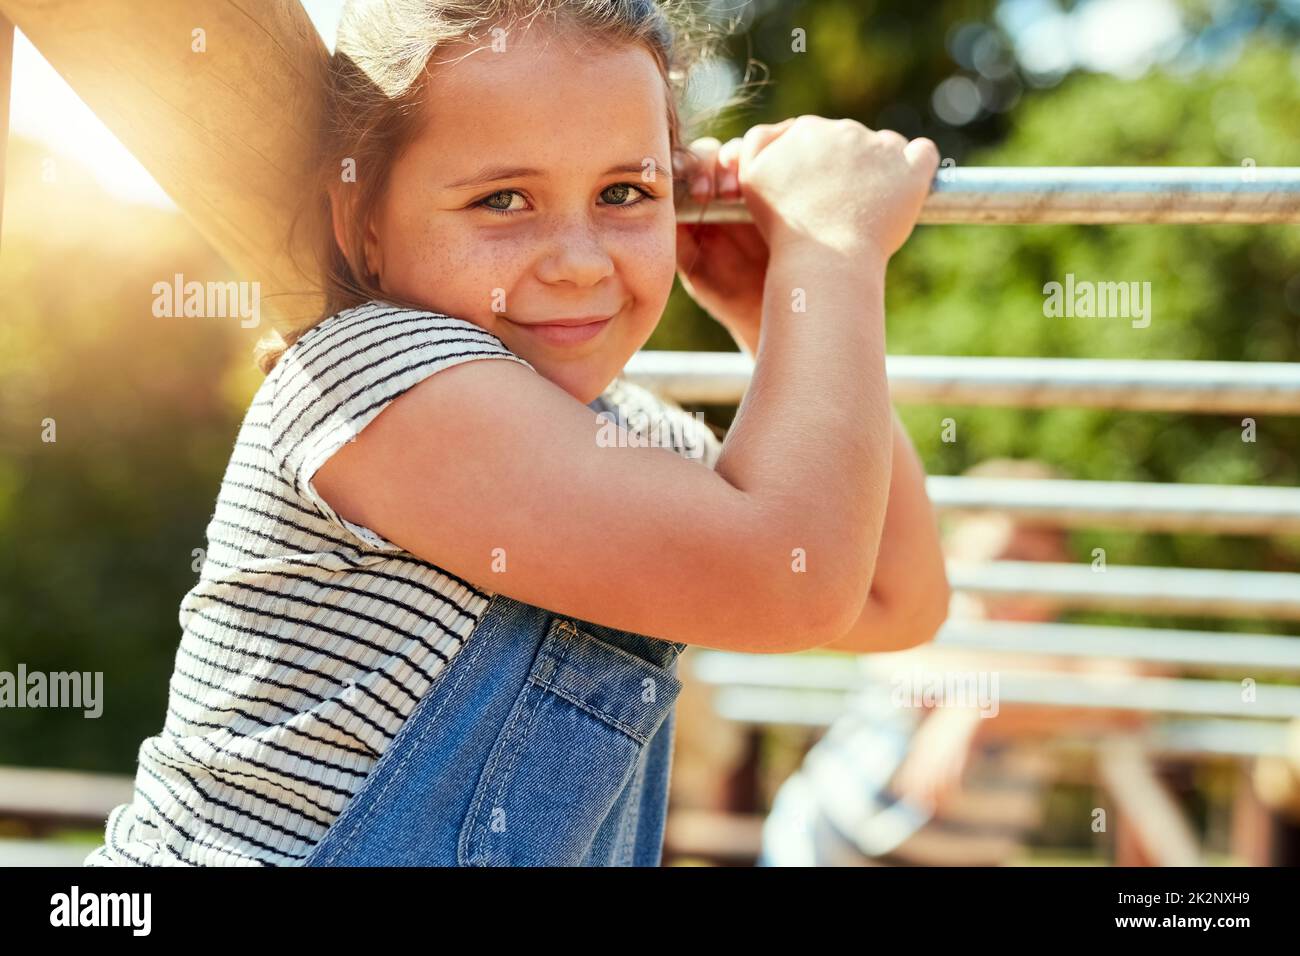 Le meilleur moment pour jouer. Portrait d'une petite fille jouant sur la jungle gym au parc. Banque D'Images